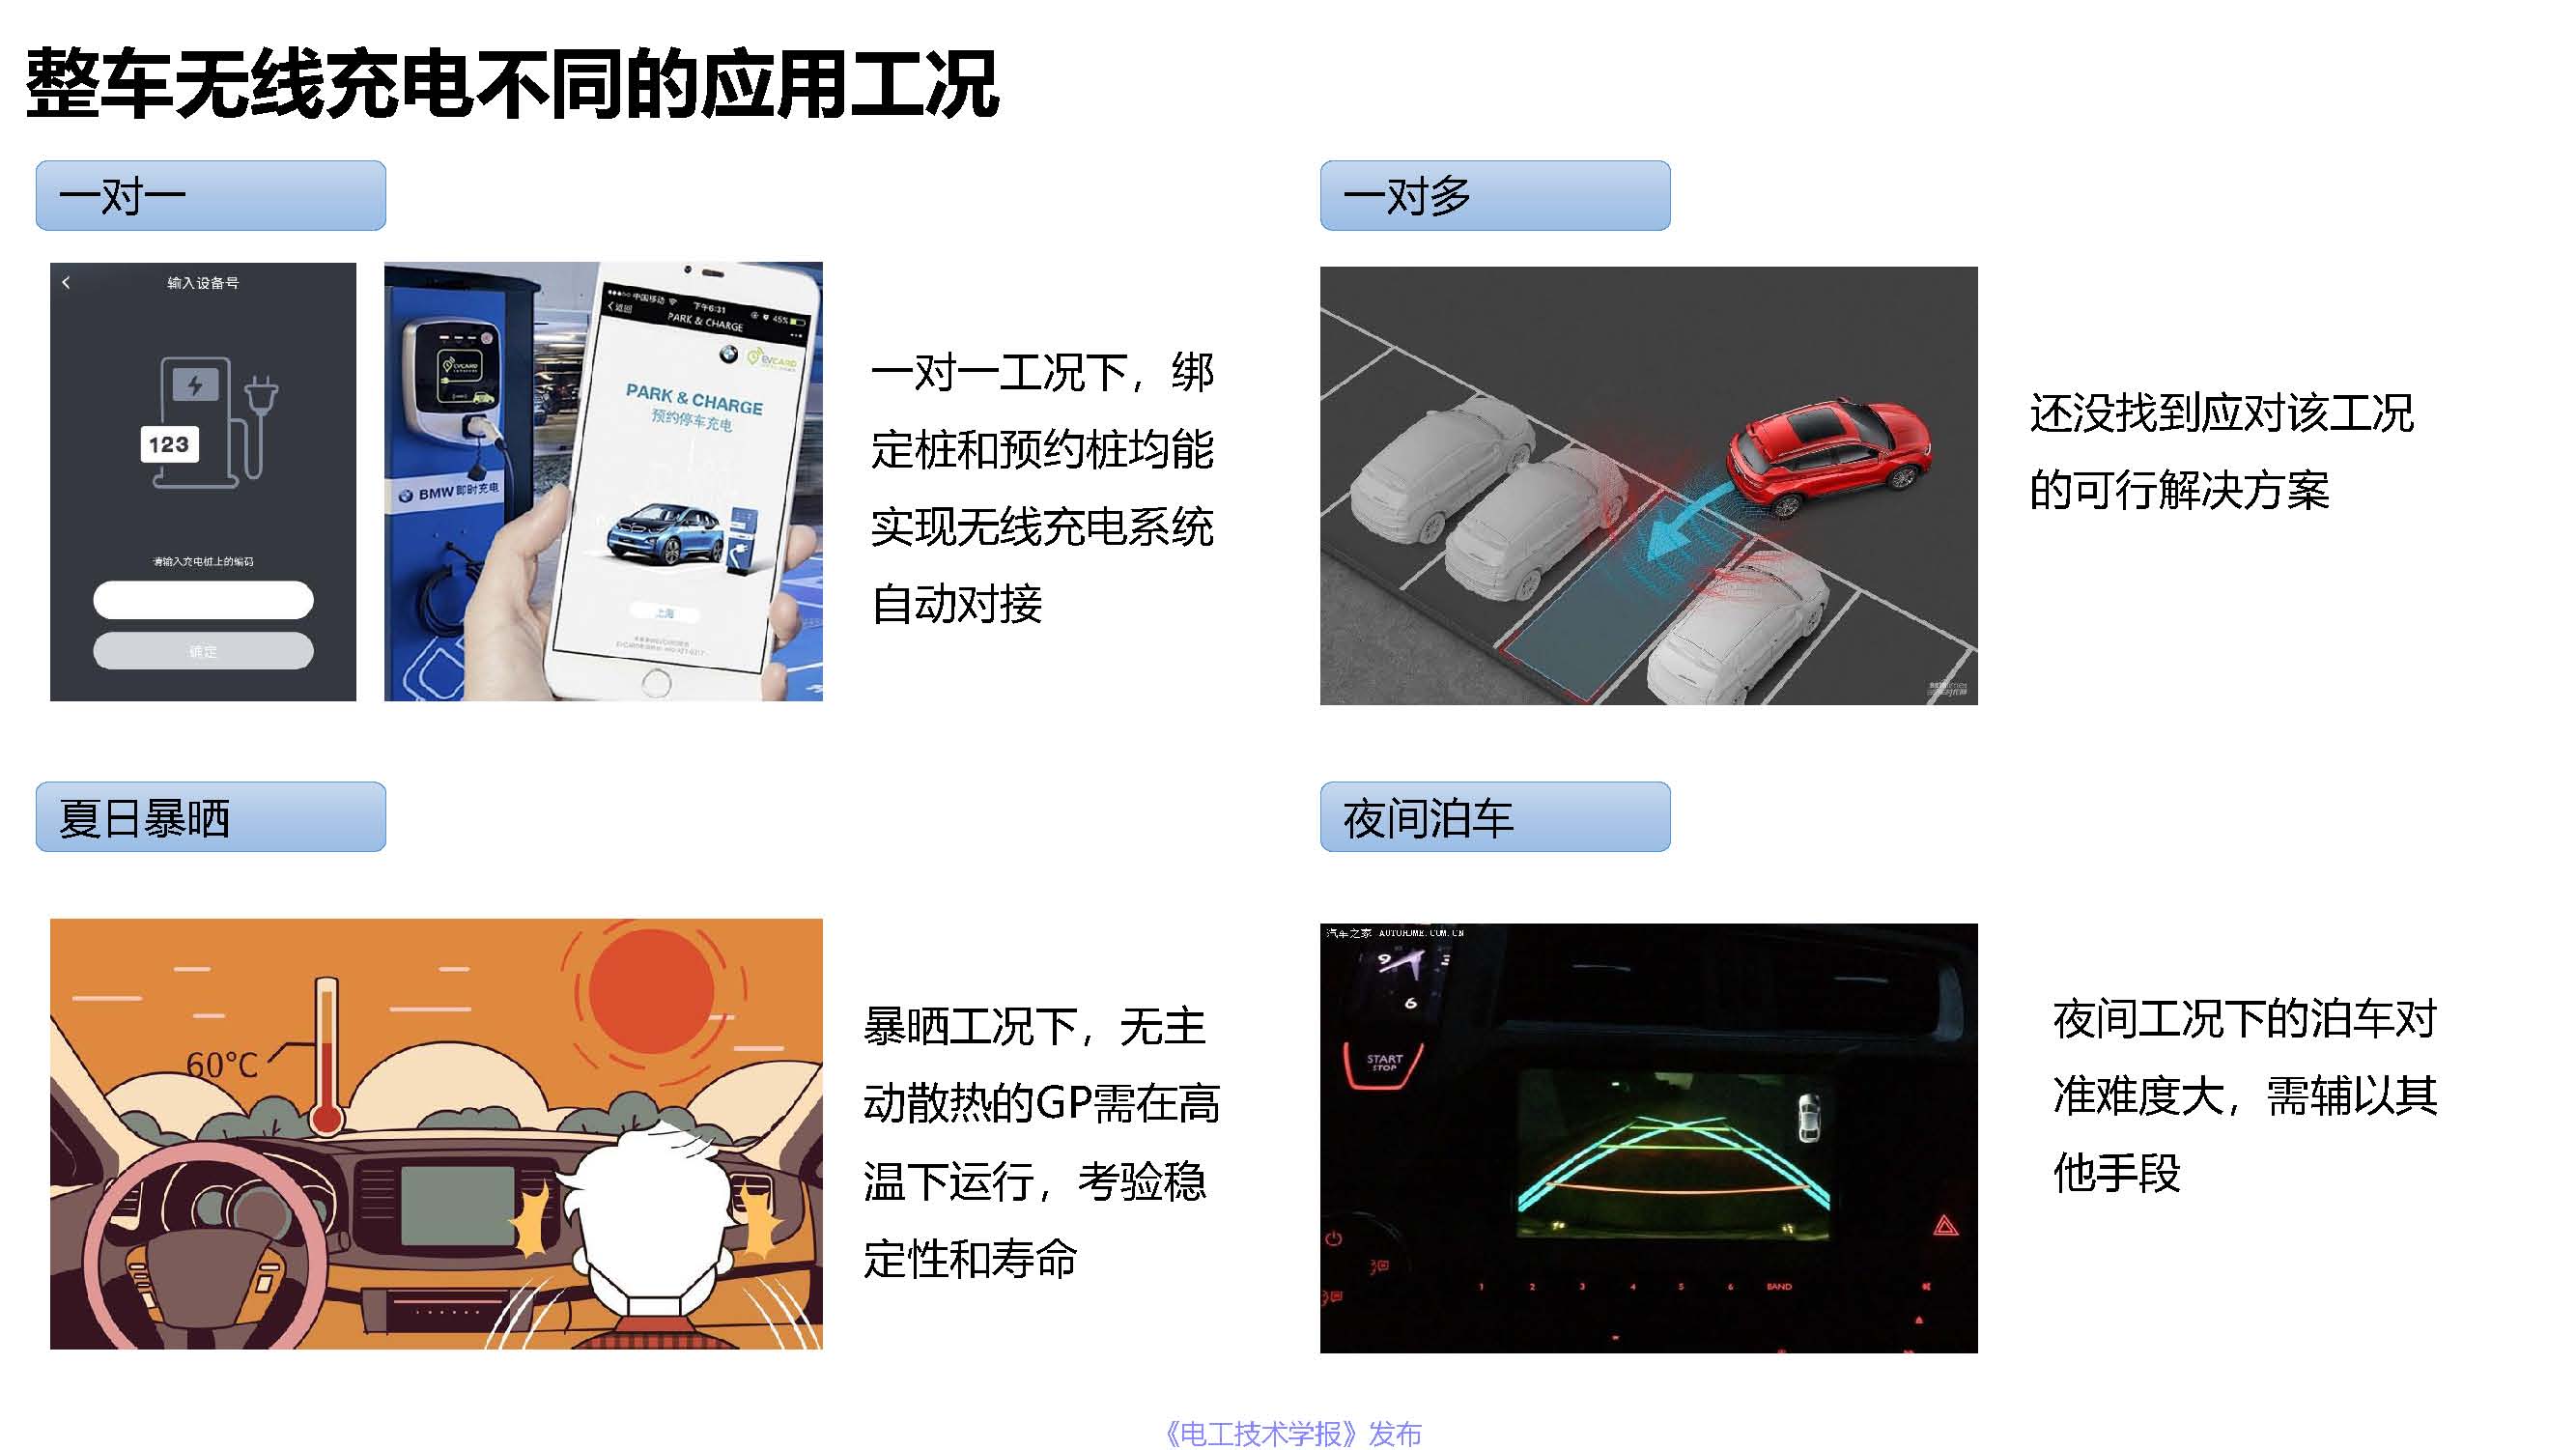 上海捷能汽车技术有限公司吴巍峰：无线充电系统在整车上的应用